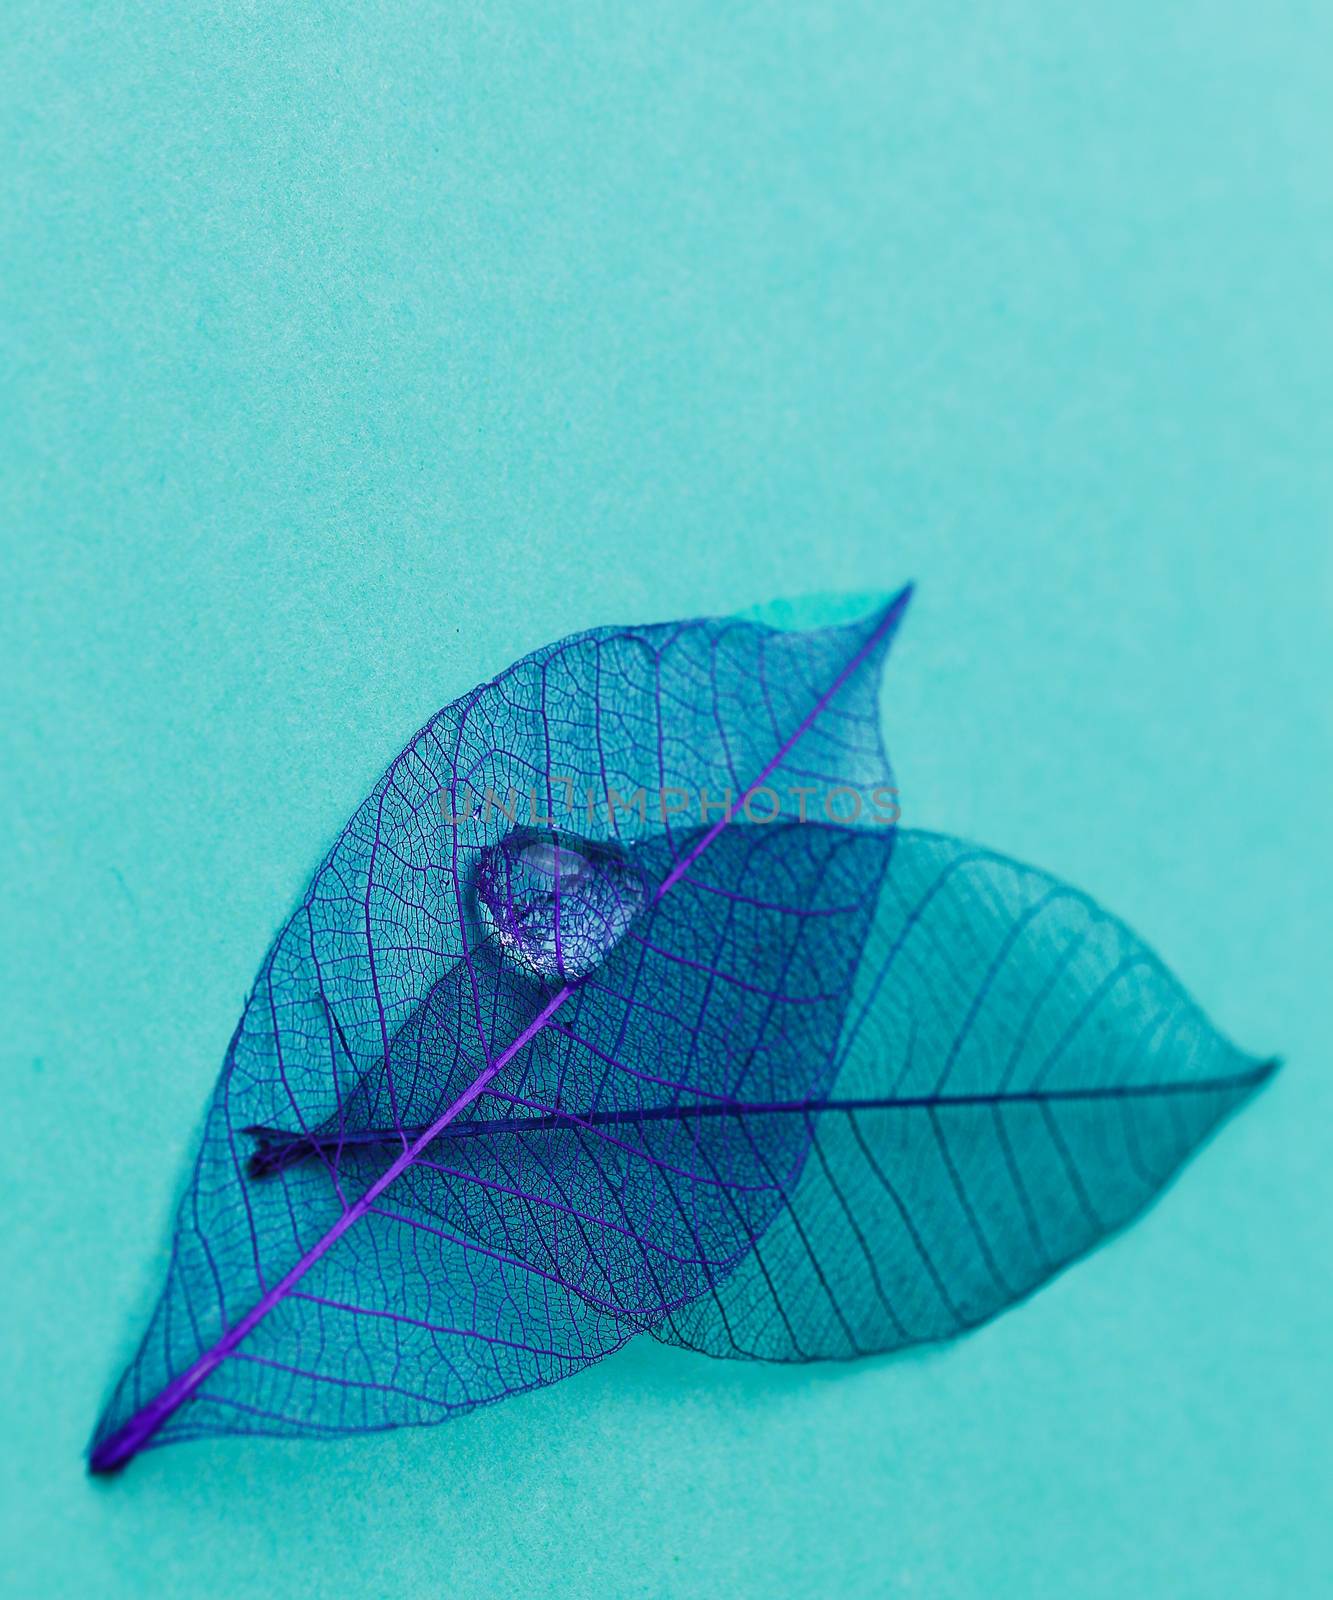 Leaf on the table by rufatjumali